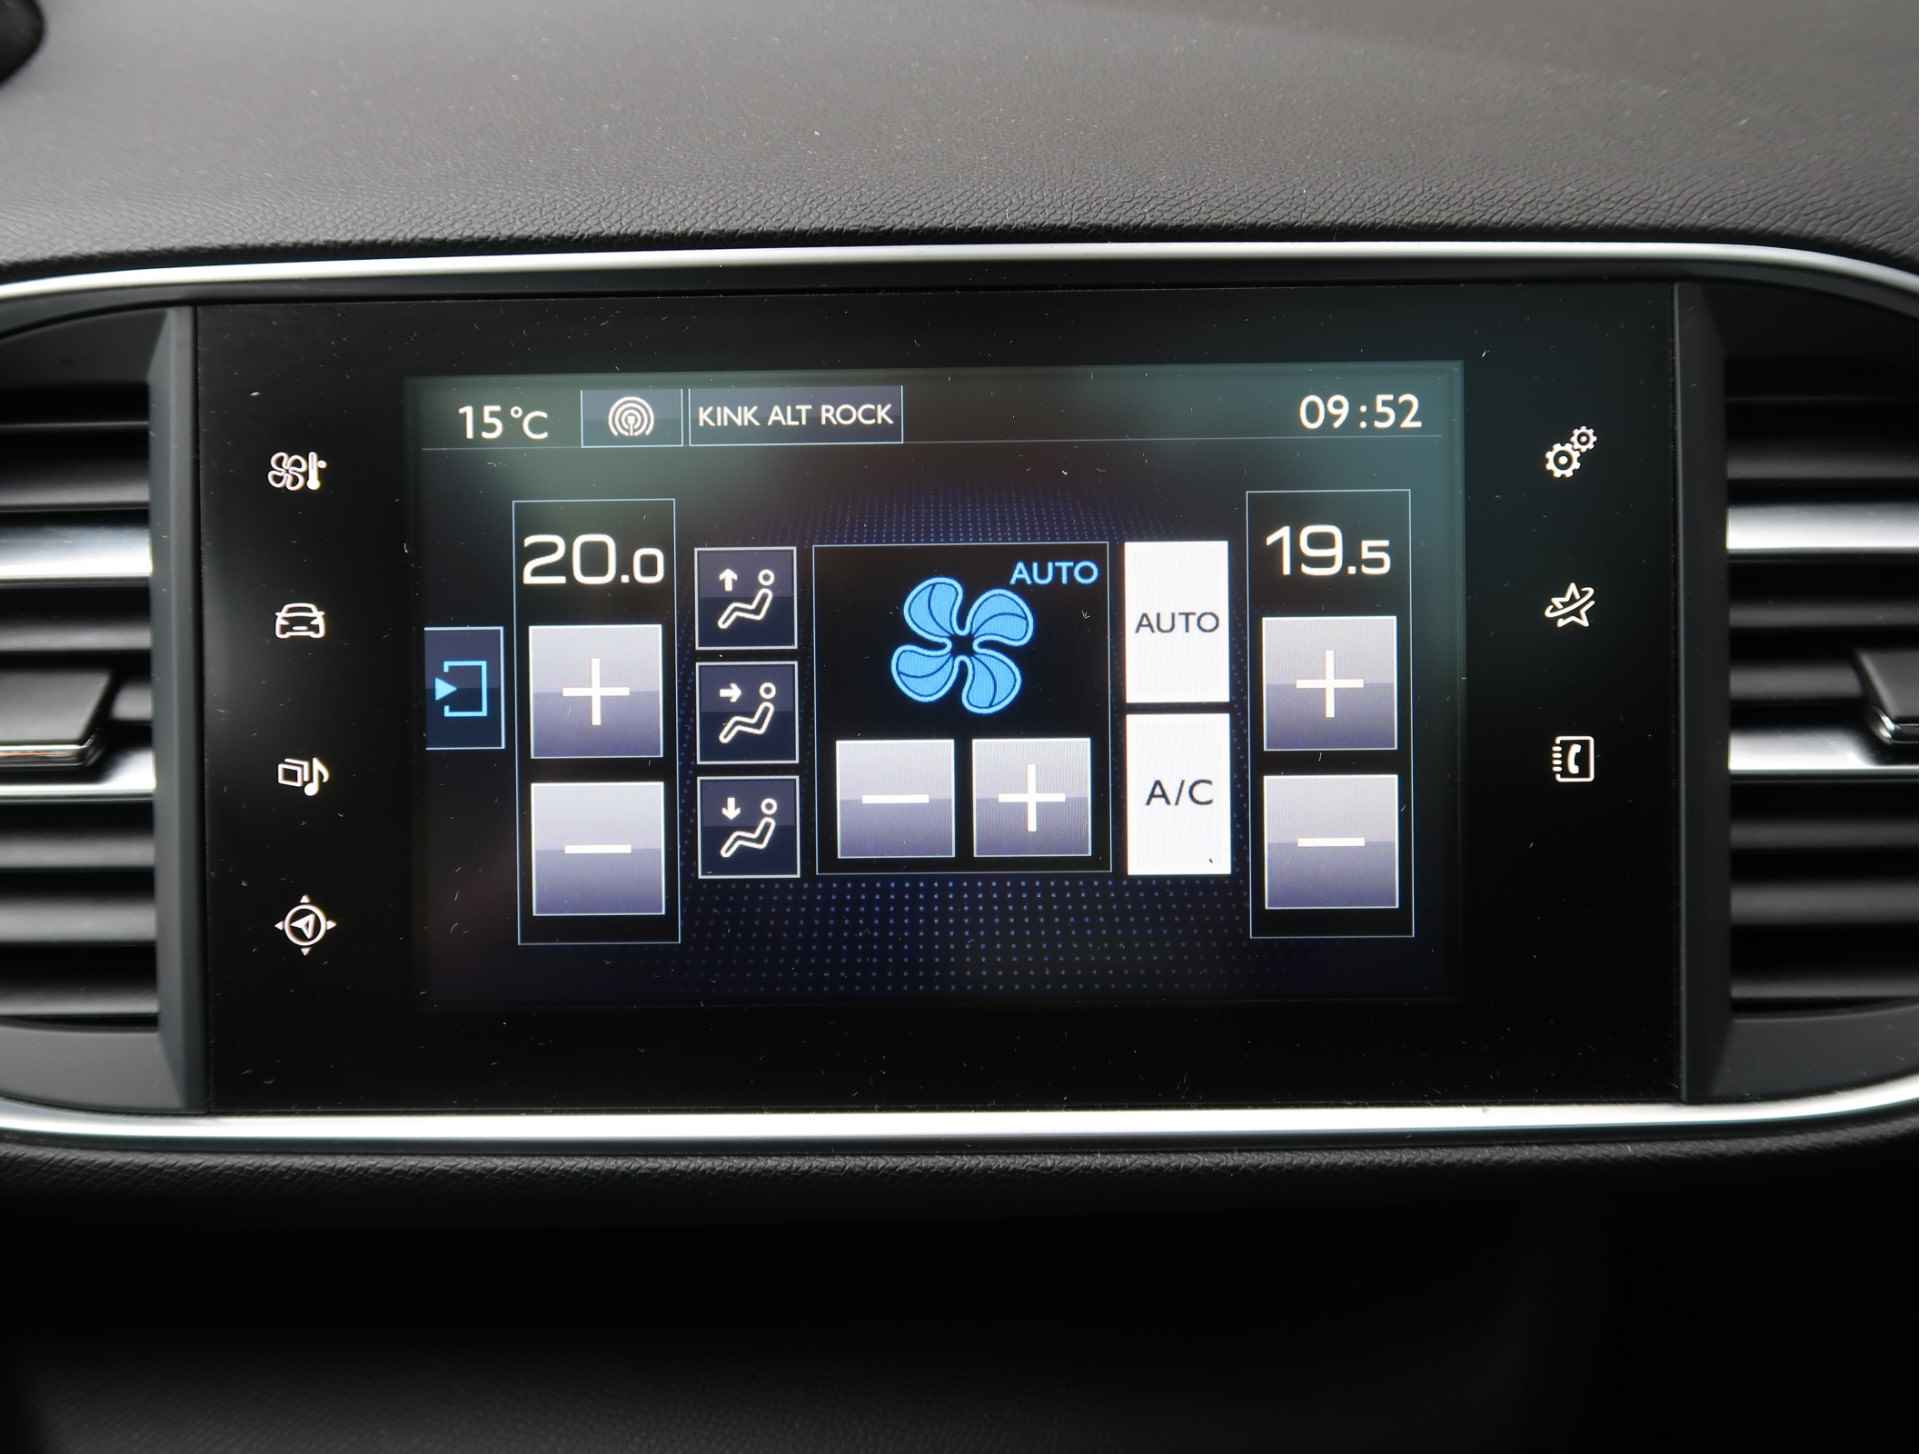 Peugeot 308 SW 110 PK Benzine * Panoramadak * Navigatie * L.M. Velgen * DAB+ Radio + CD * Cruise & Climate Control * Voor en achter Parkeersensoren* Vierseizoenenbanden * - 19/45